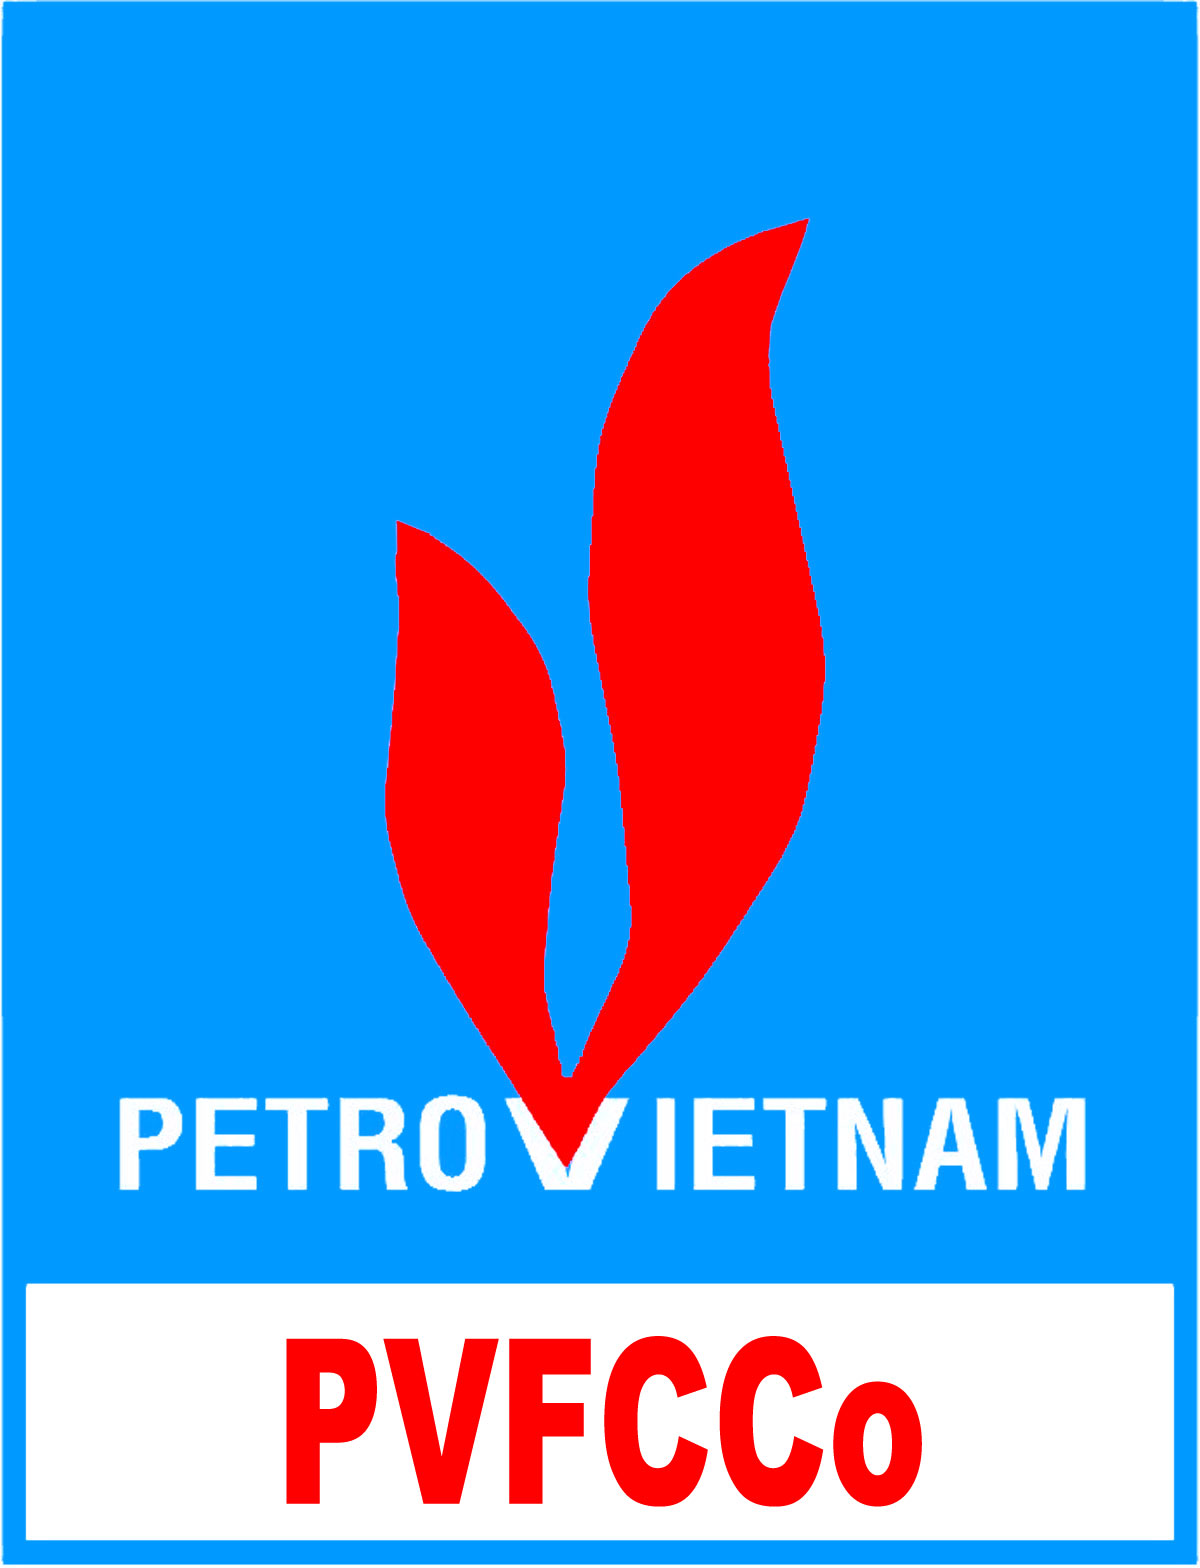 PDVSA vector logo